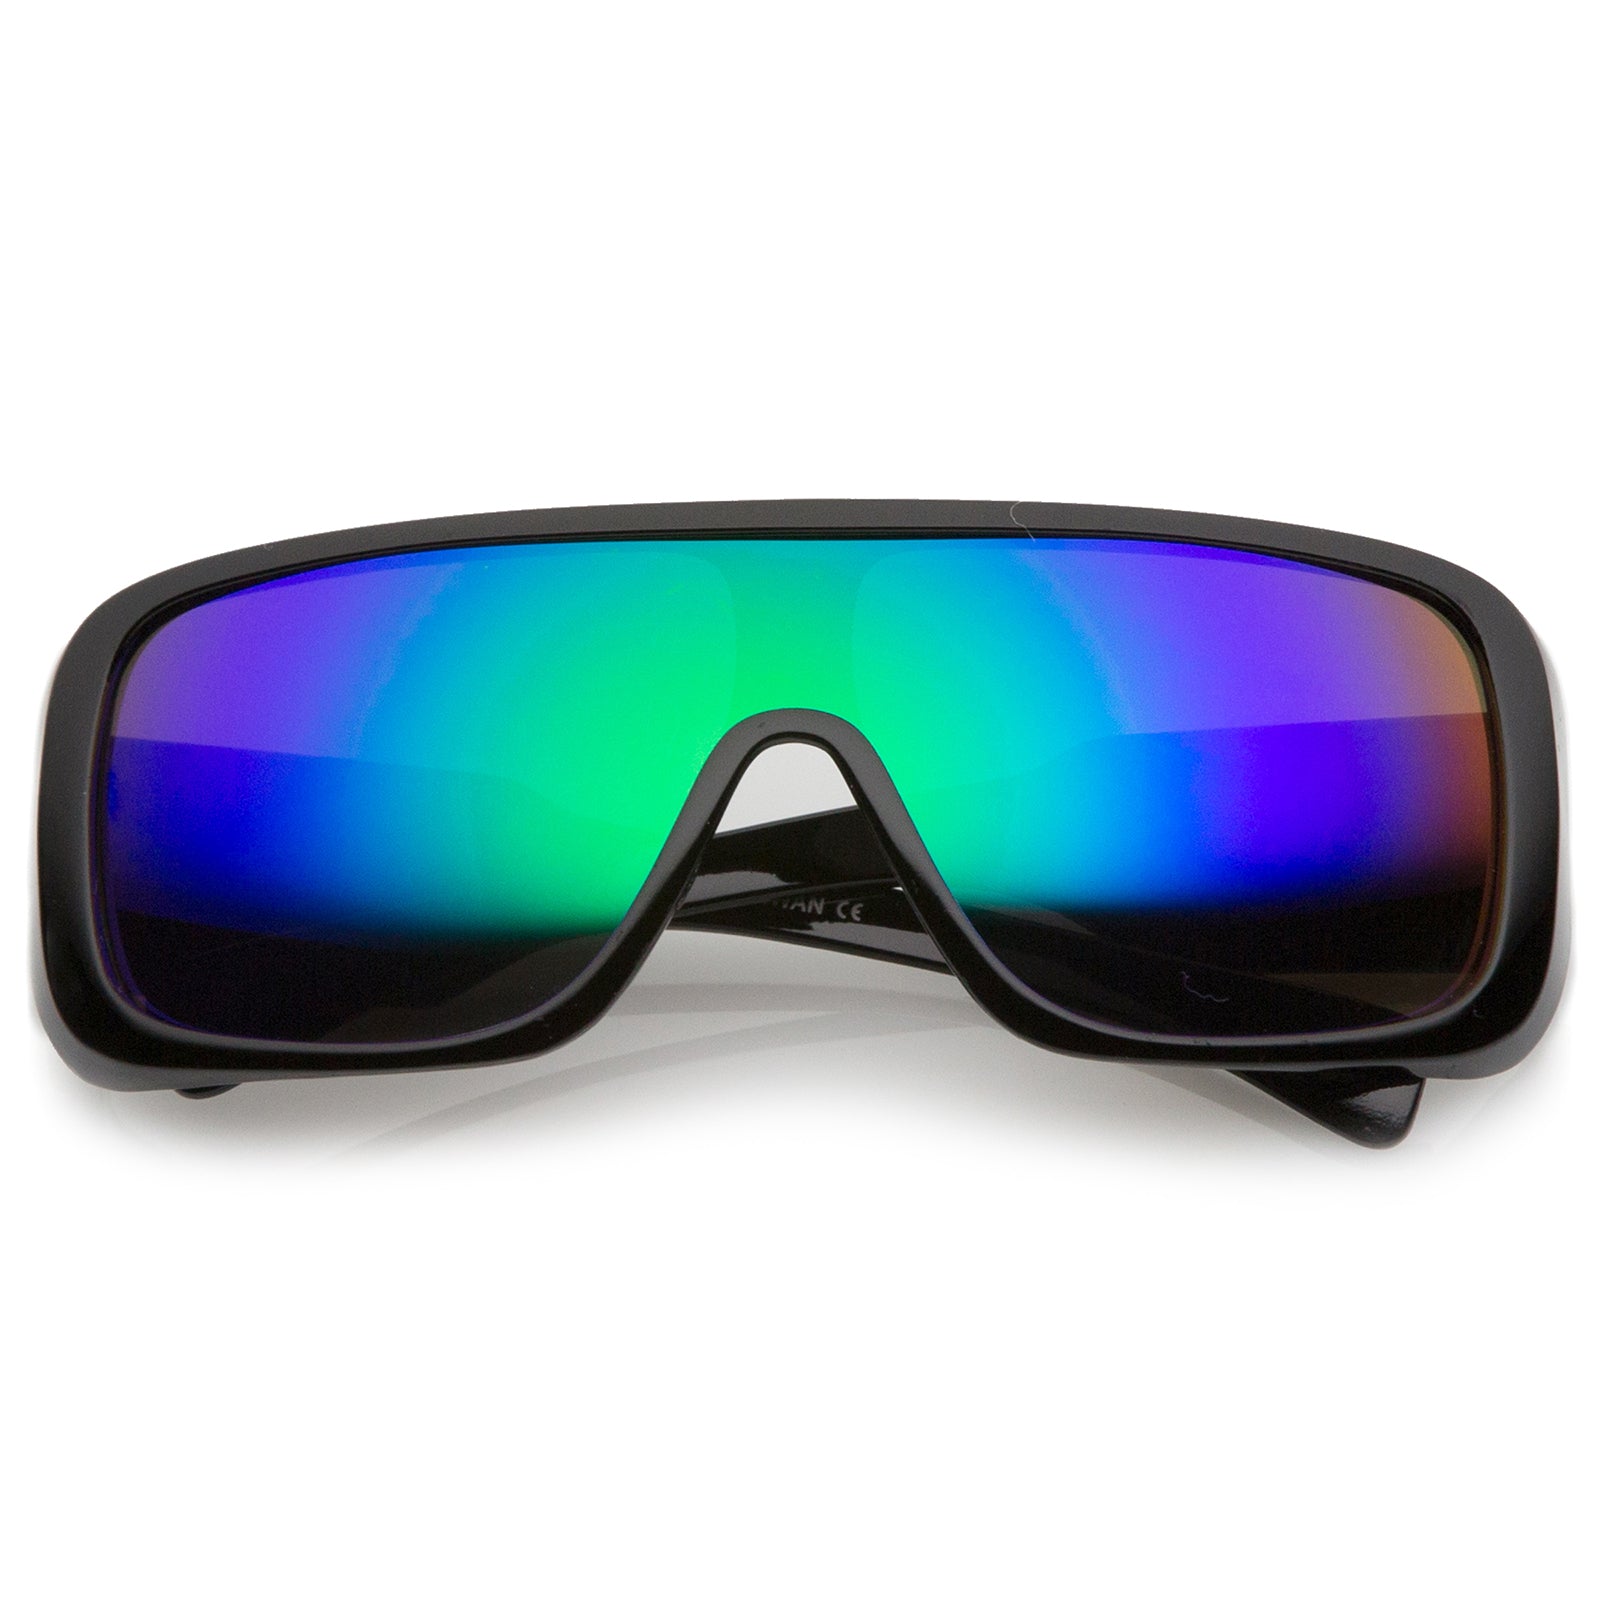 Locs reflective colored mirror lenses | Locs Sunglasses